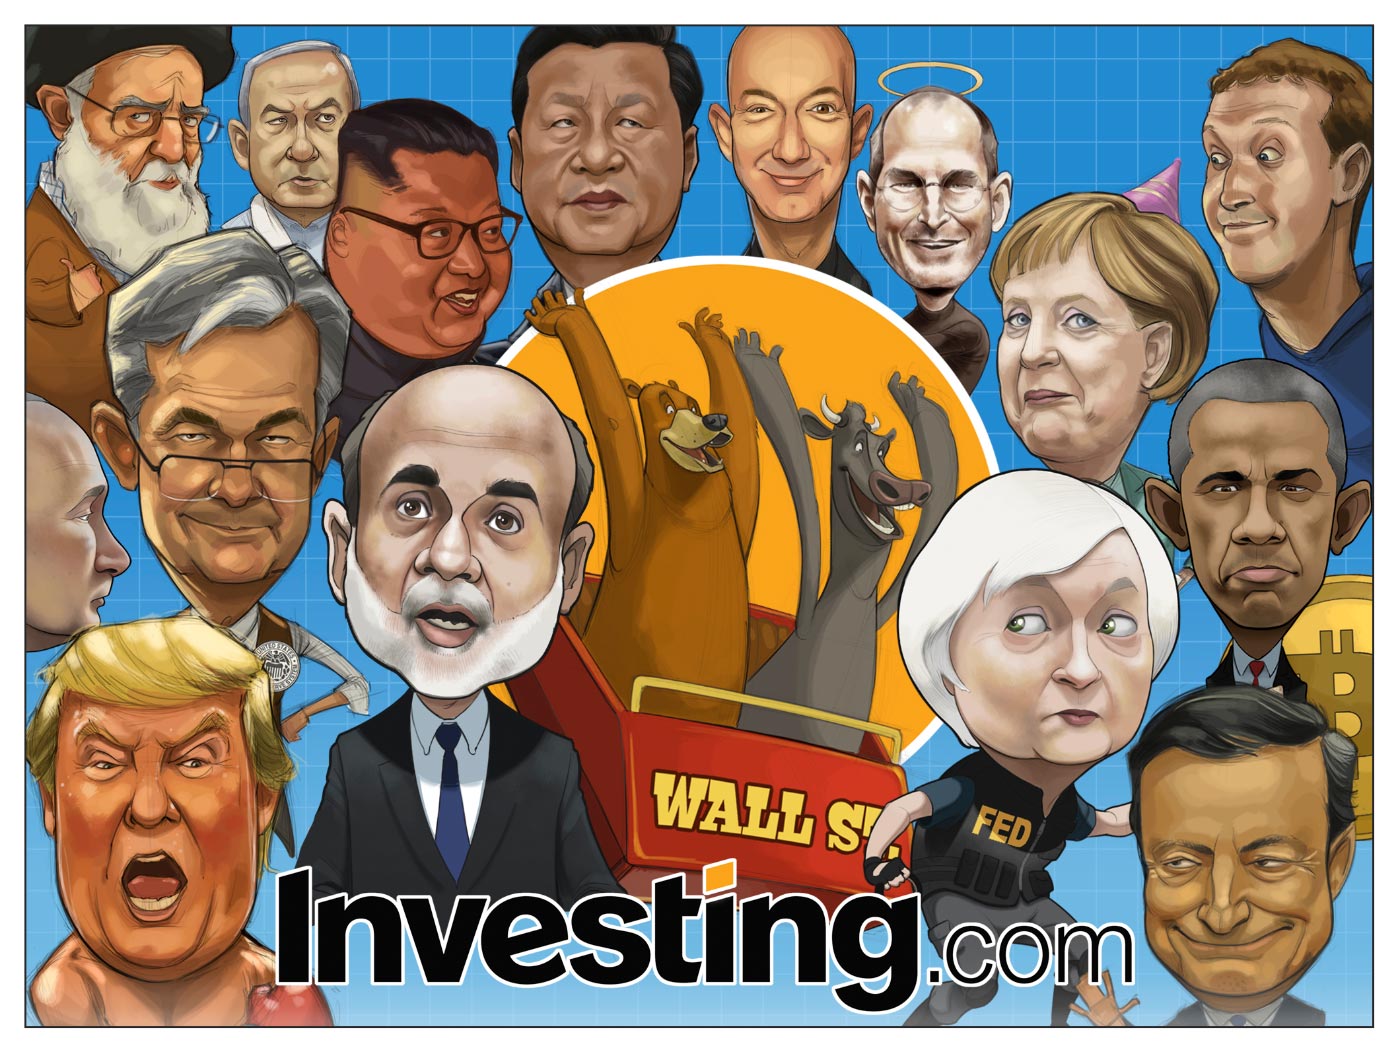 Investing.com Catat Pencapaian Komik ke-250. Siapakah Watak Kegemaran Anda?